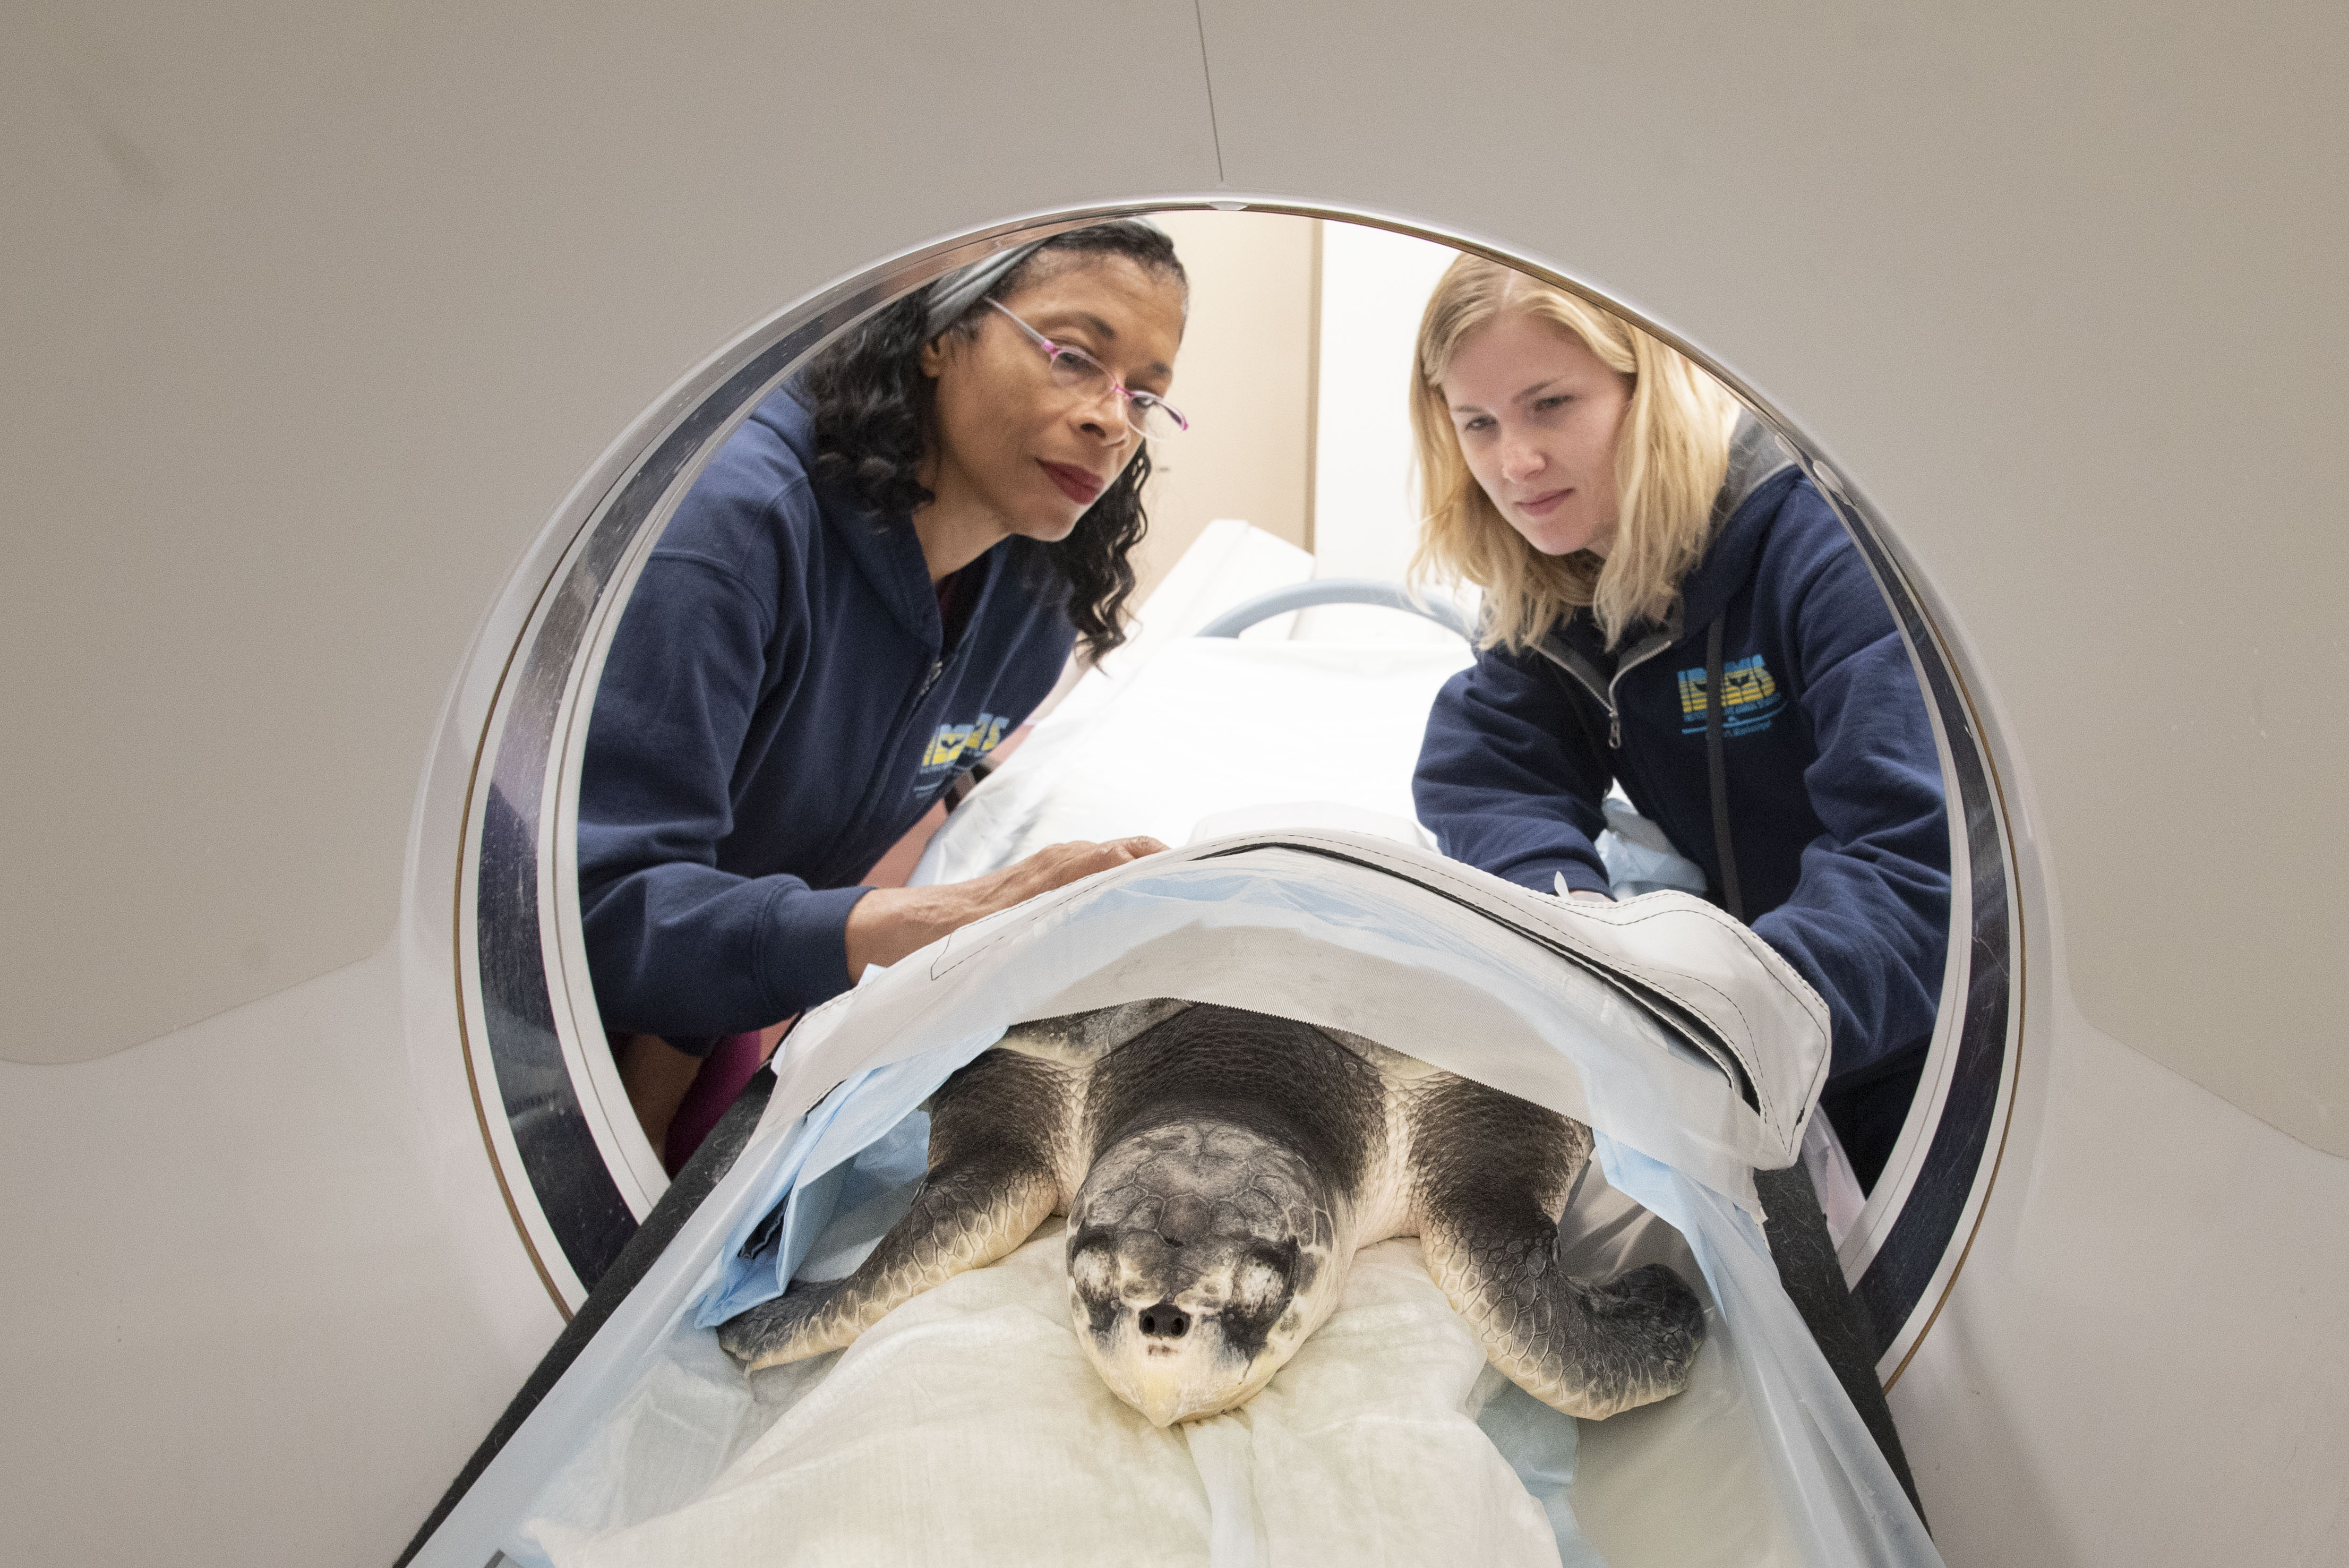 A sea turtle receives an MRI